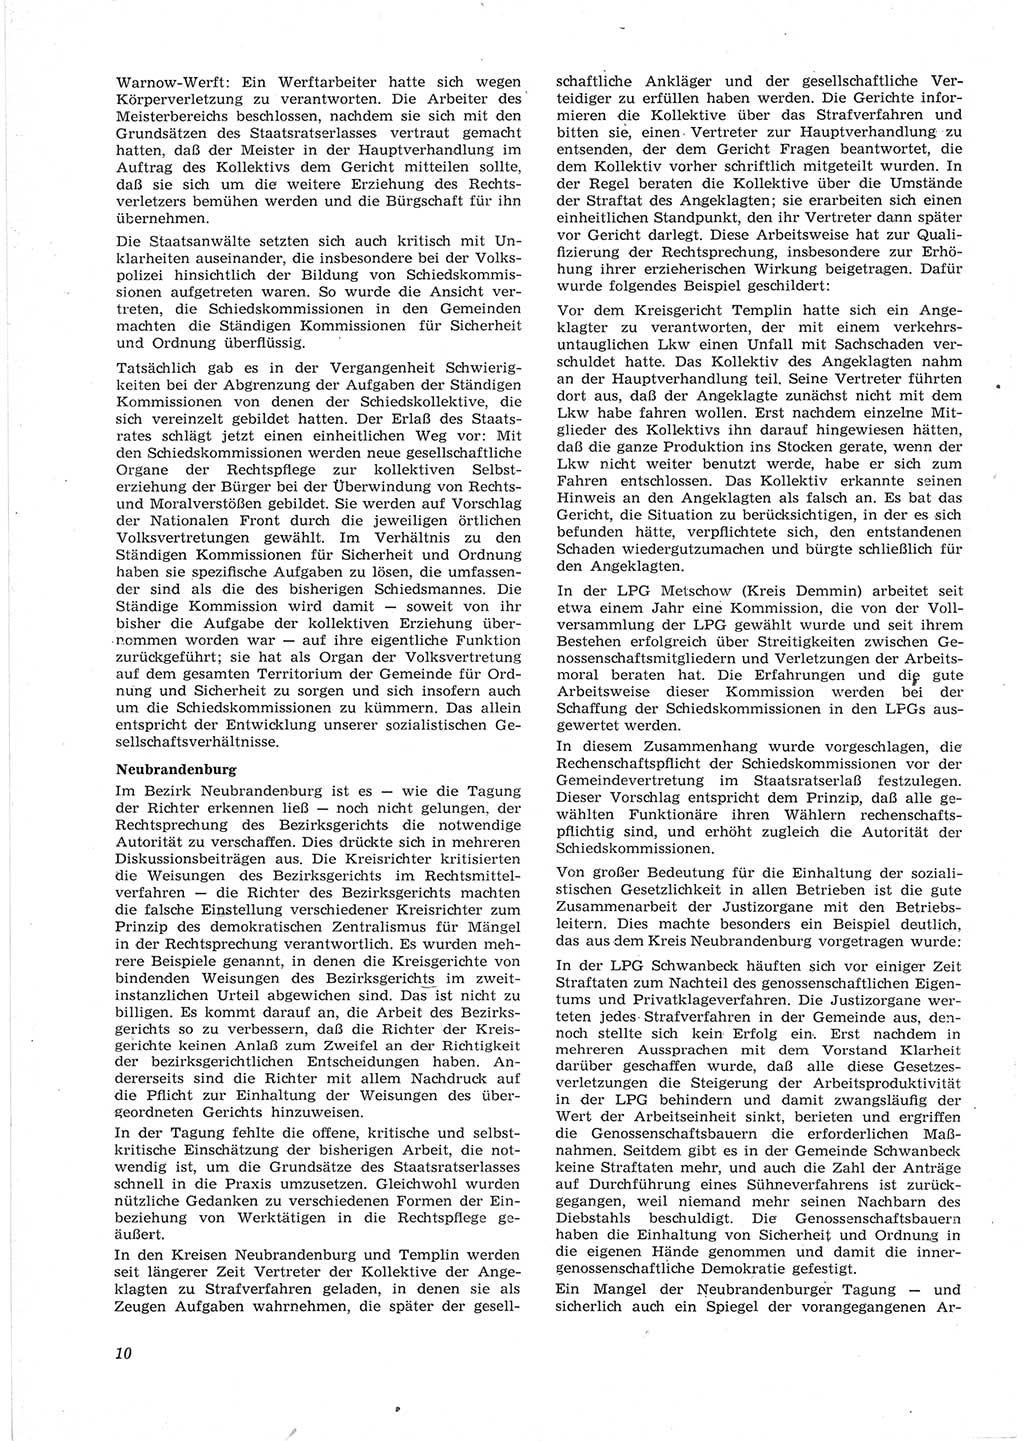 Neue Justiz (NJ), Zeitschrift für Recht und Rechtswissenschaft [Deutsche Demokratische Republik (DDR)], 17. Jahrgang 1963, Seite 10 (NJ DDR 1963, S. 10)